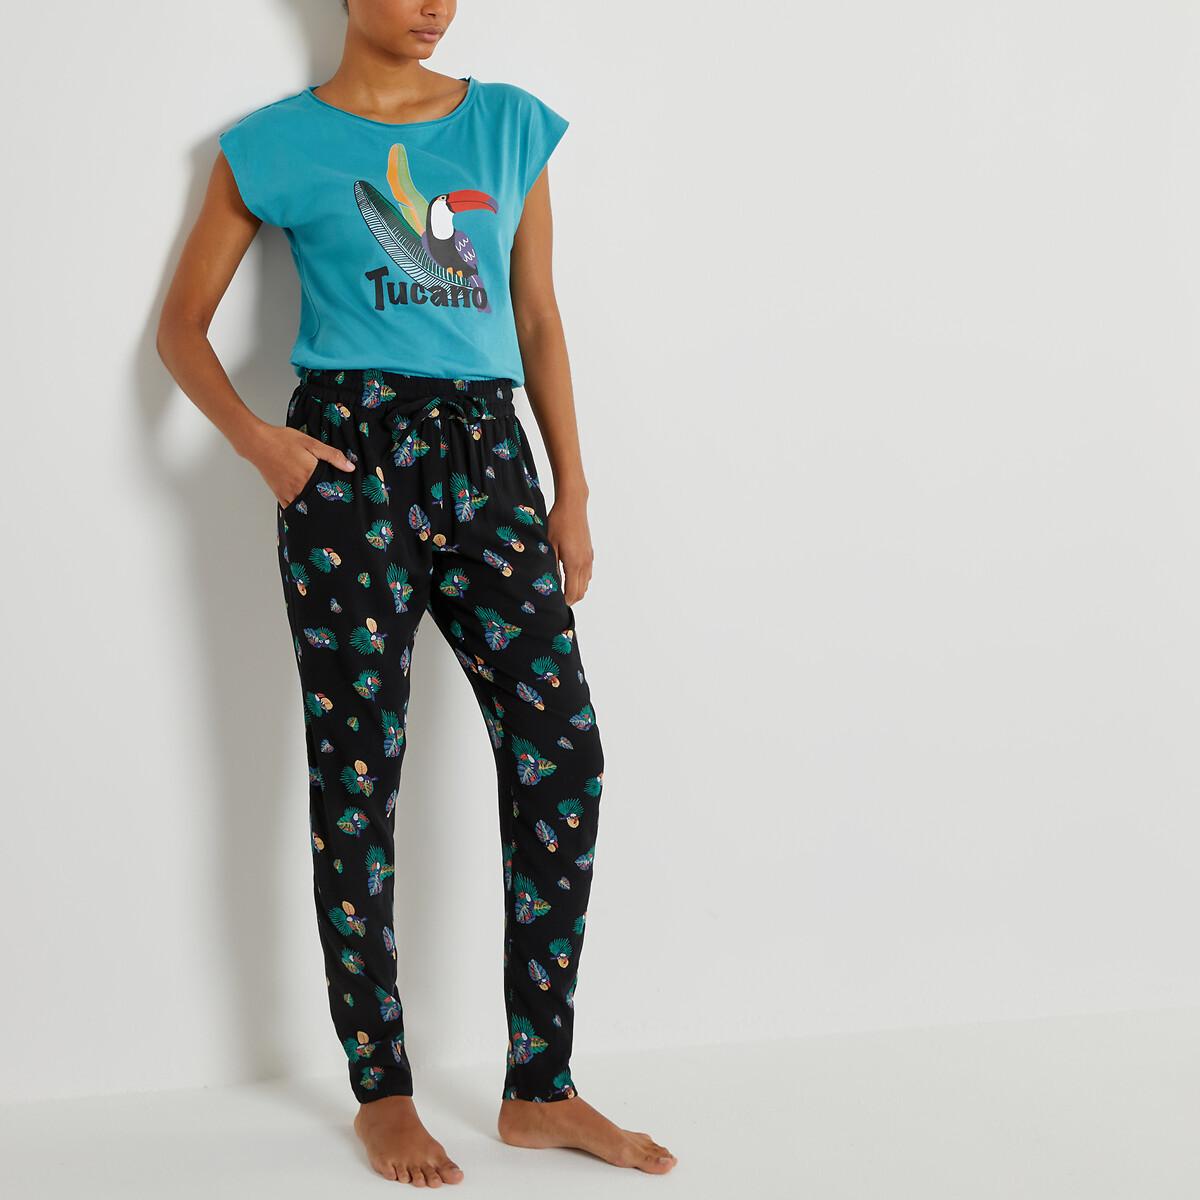 Bedruckter Pyjama Damen Weiss Bedruckt 38 von La Redoute Collections